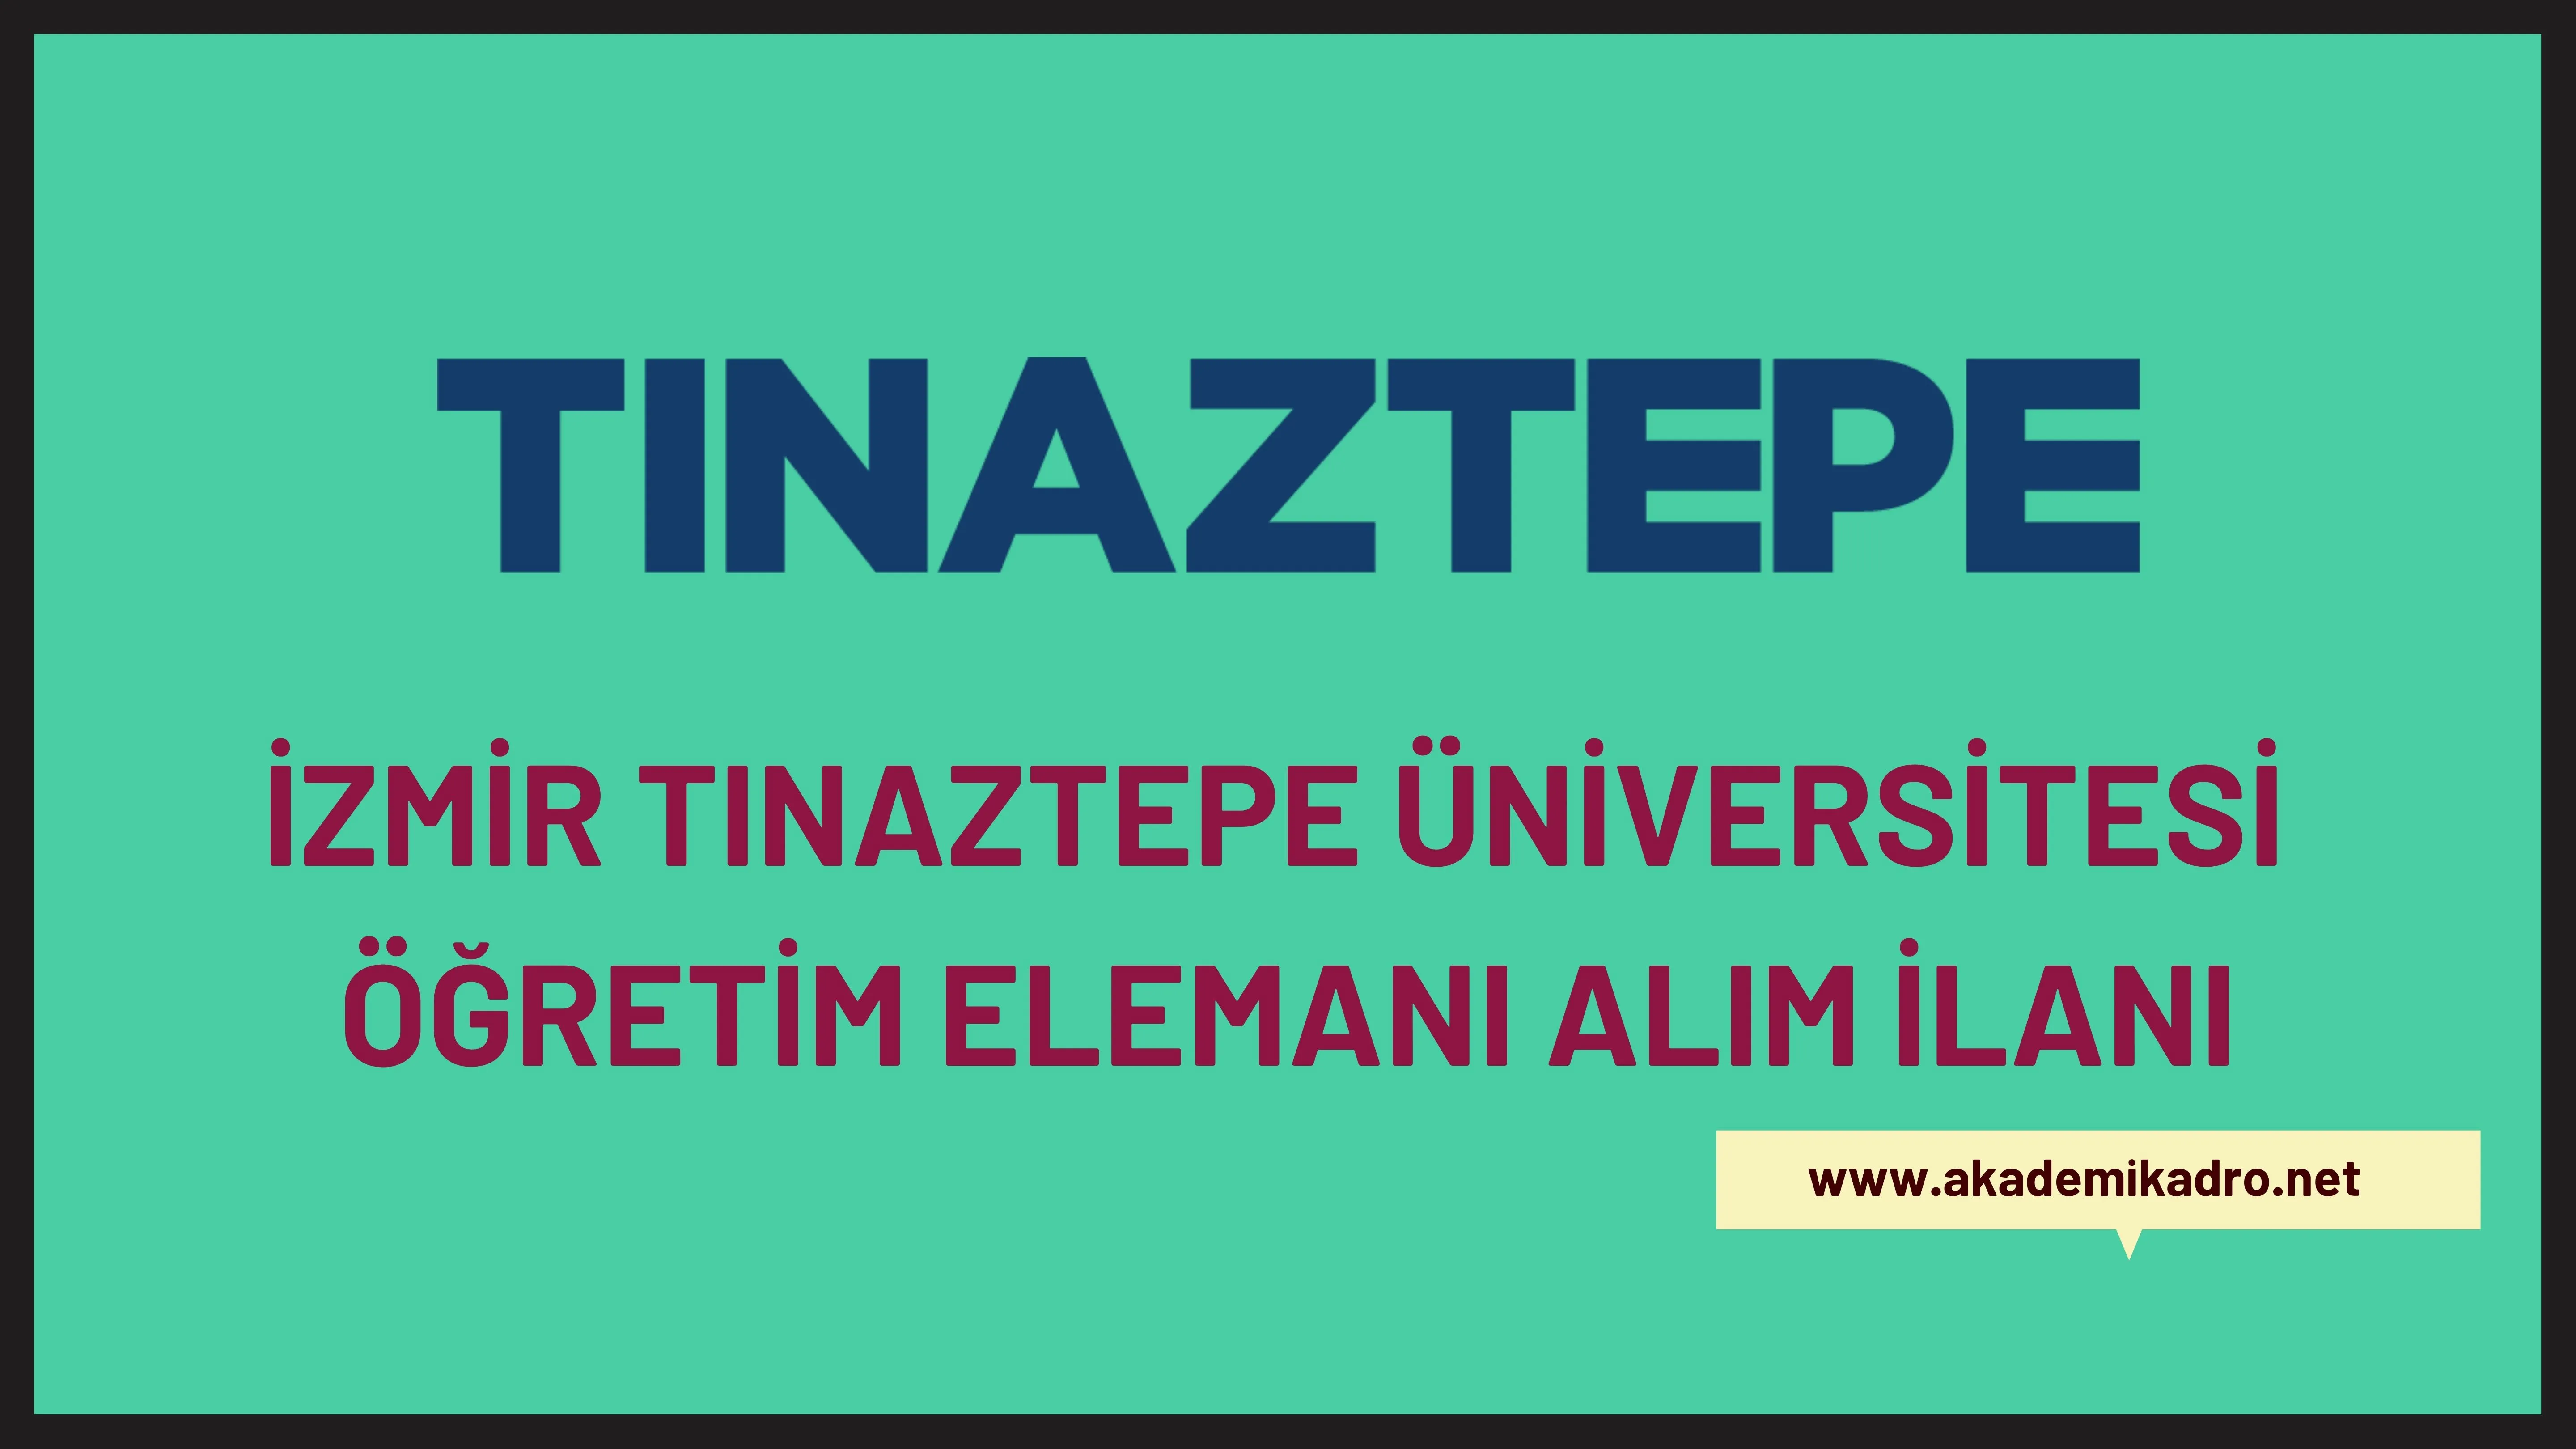 İzmir Tınaztepe Üniversitesi 16 Öğretim görevlisi ve 27 Öğretim üyesi alacak.